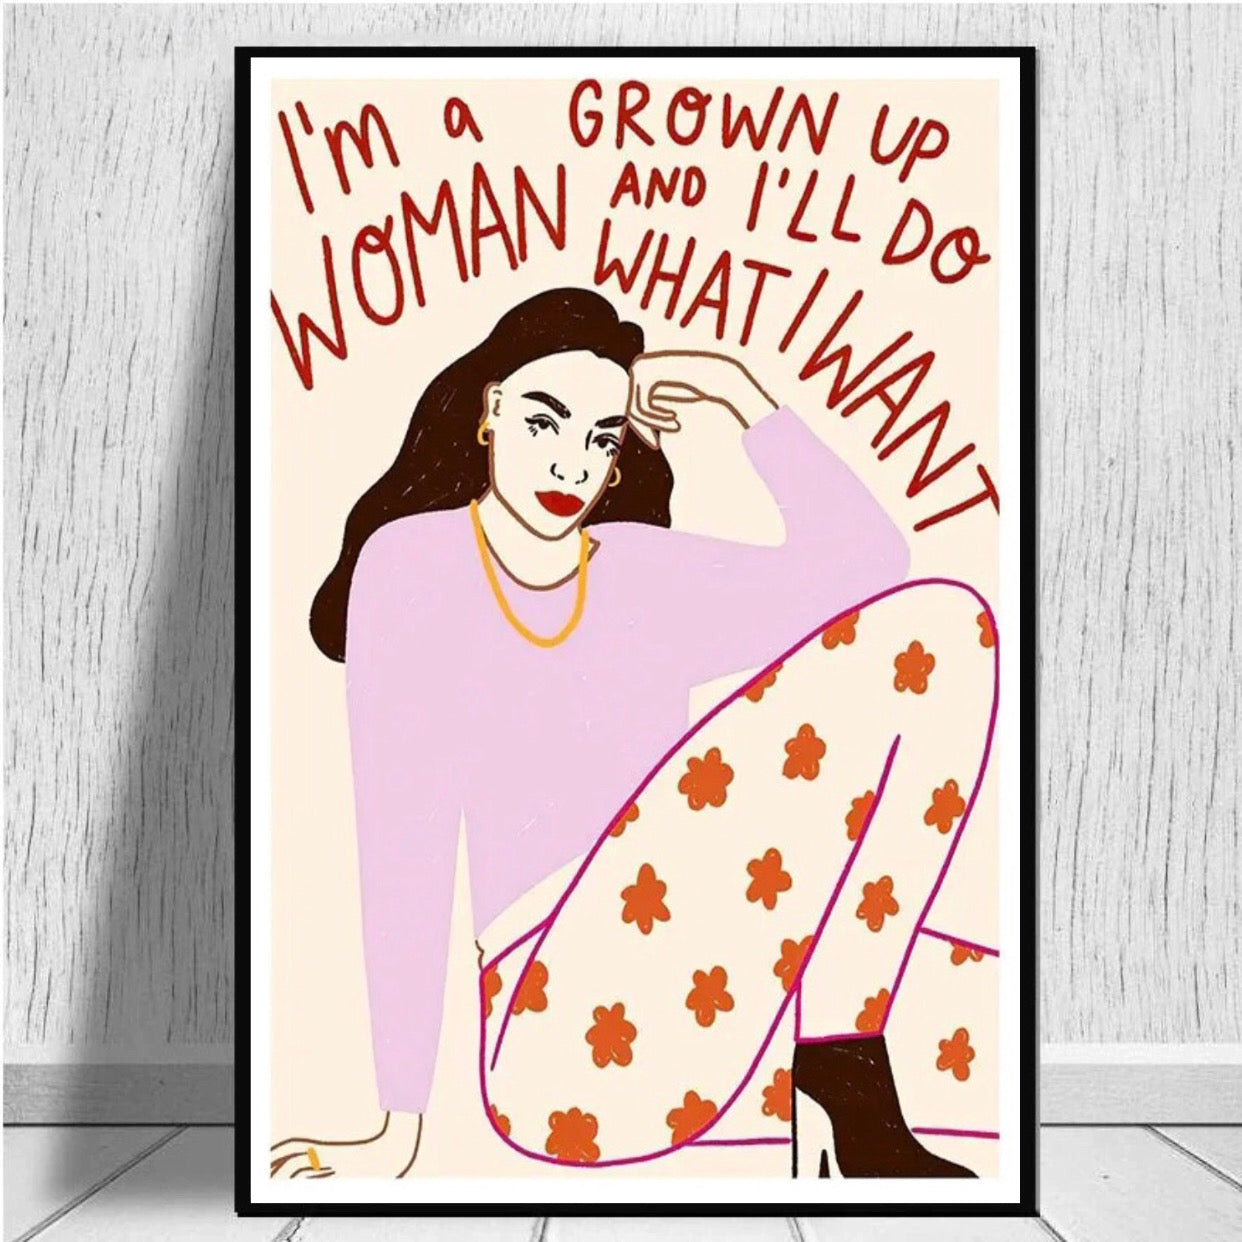 "i'm a grown up woman and i'll do what i want" poster